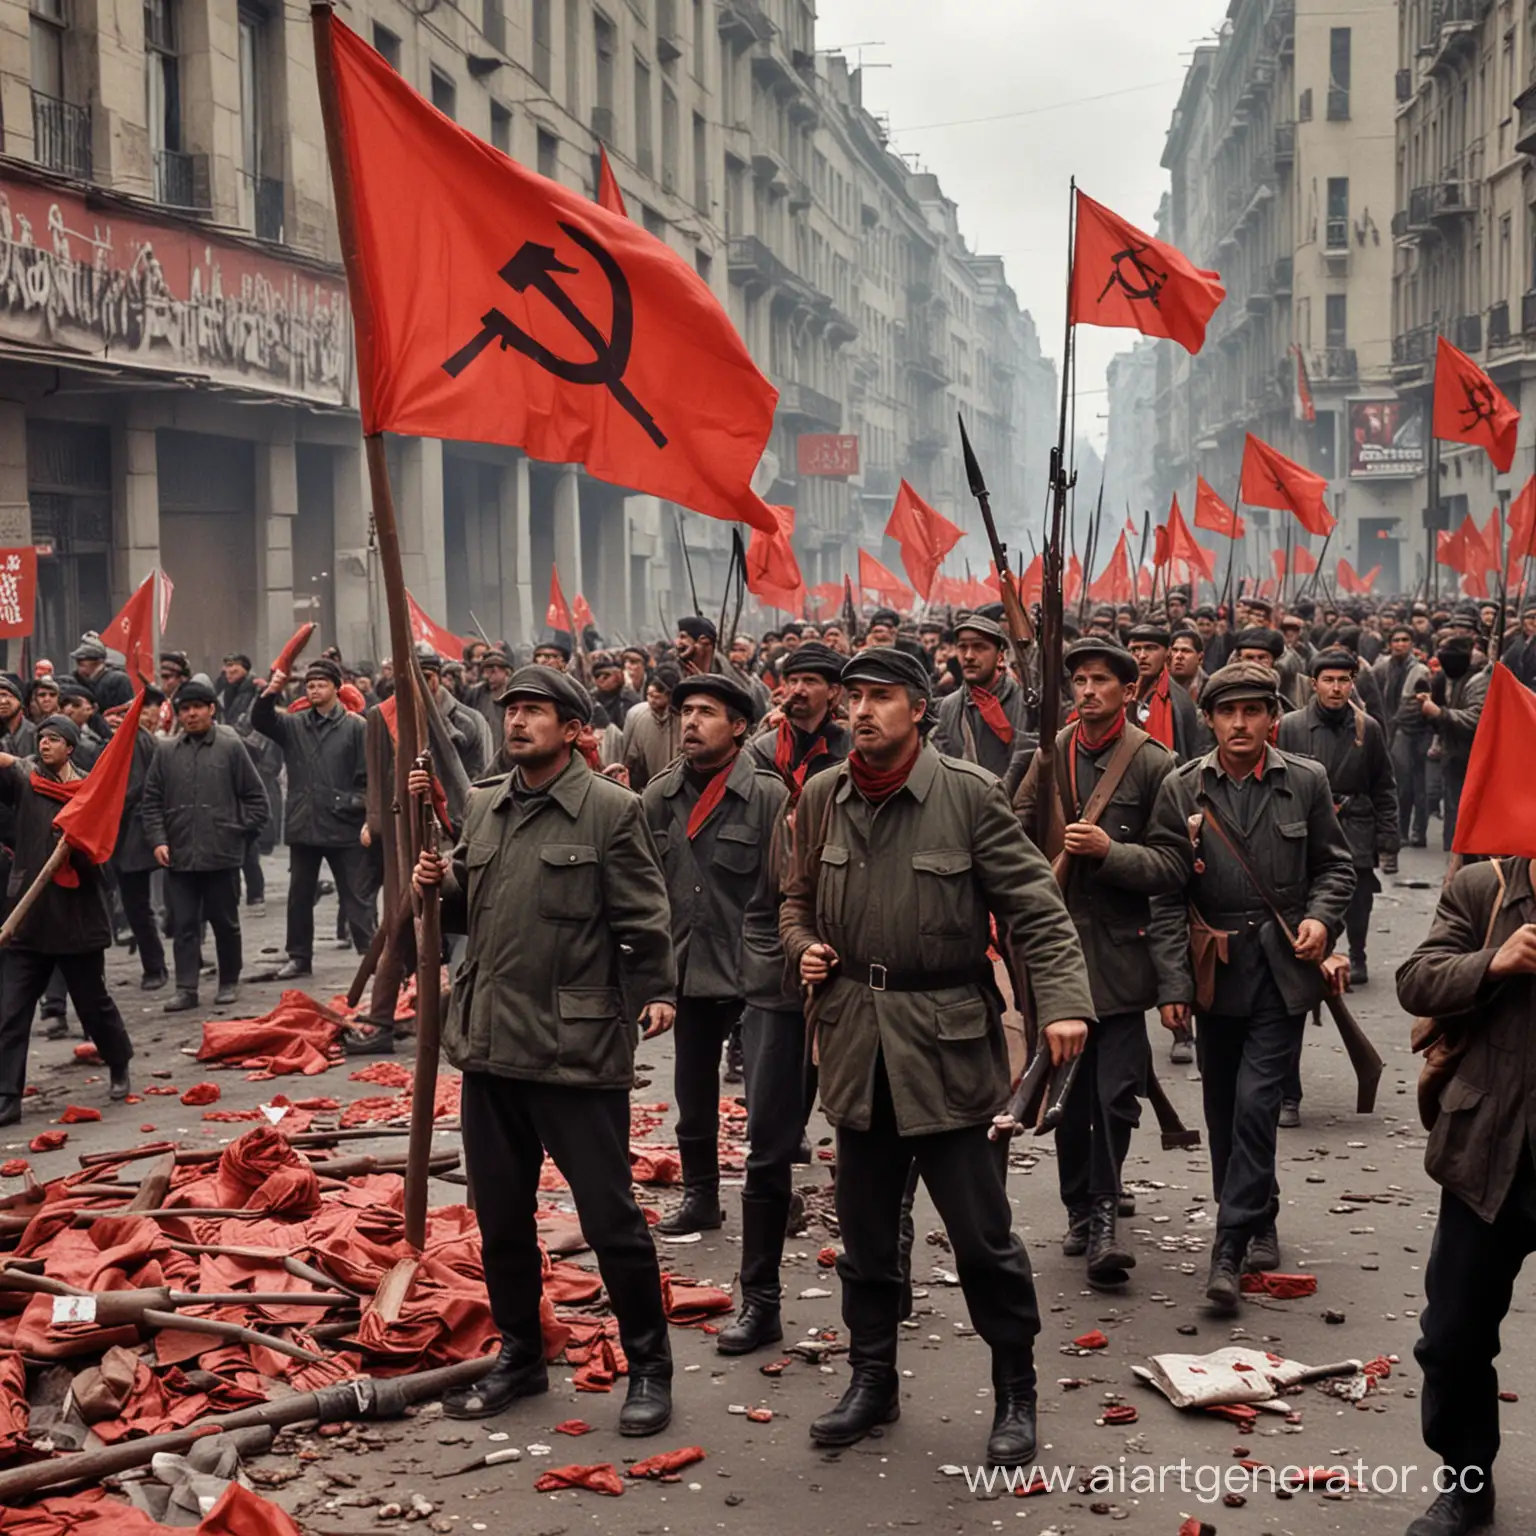 коммунисты, стрельба, баррикады, классовая борьба, коммунистическая партия, красное знамя, оружие